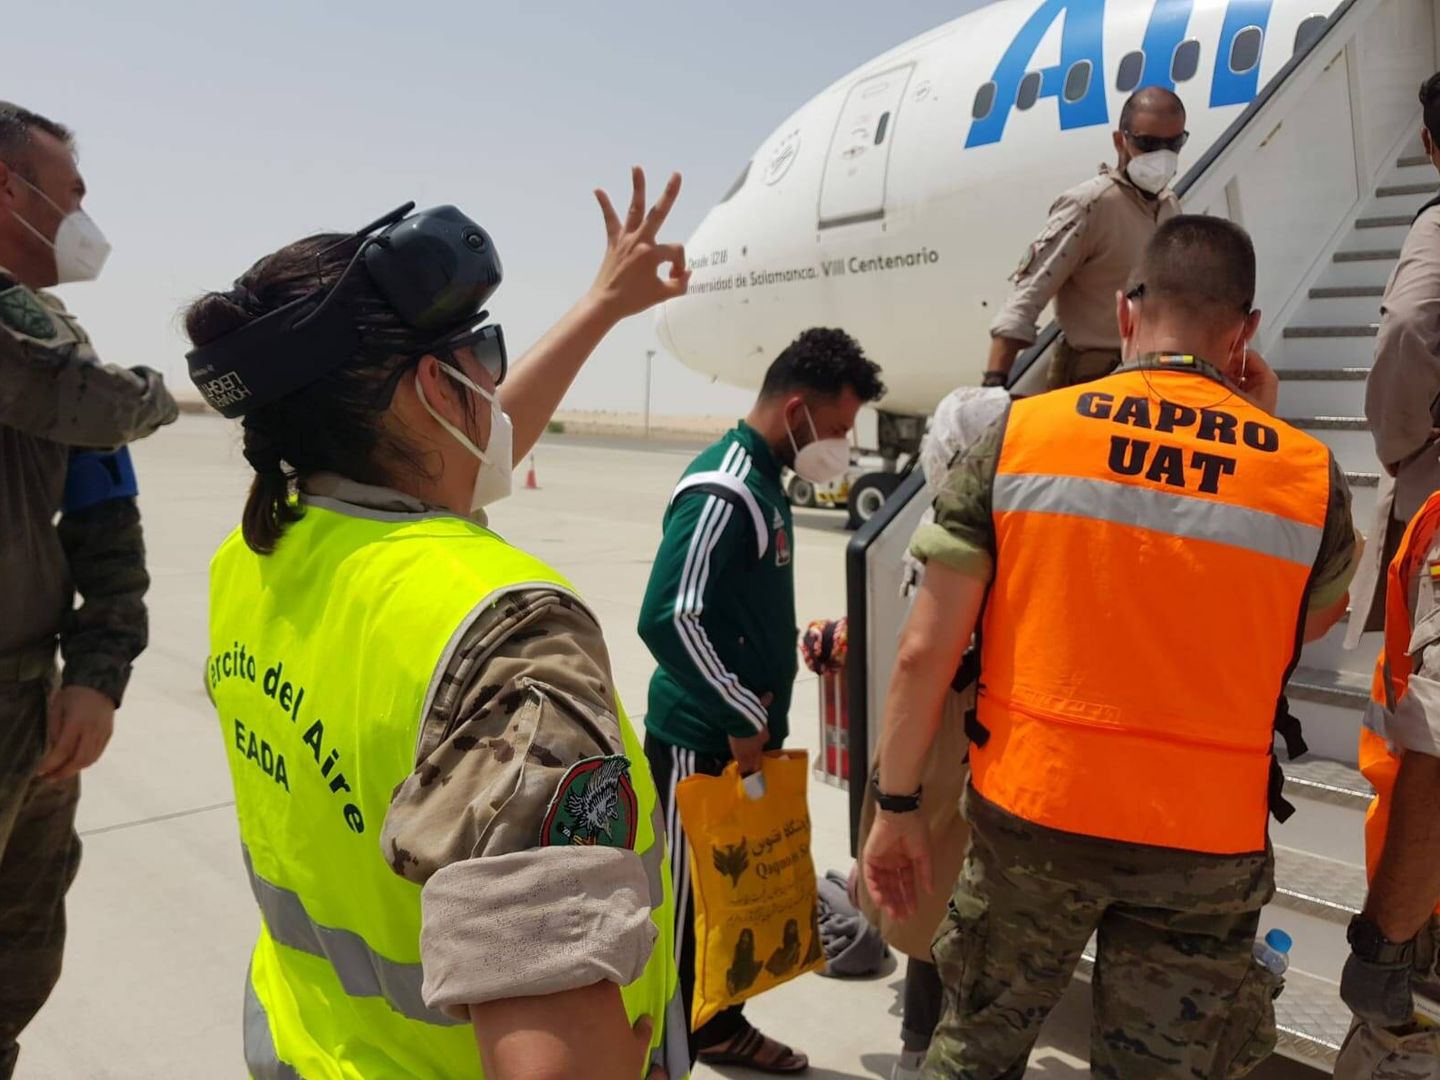 Afganos subiendo a los aviones de Air Europa en Dubai. (Ministerio de Defensa)